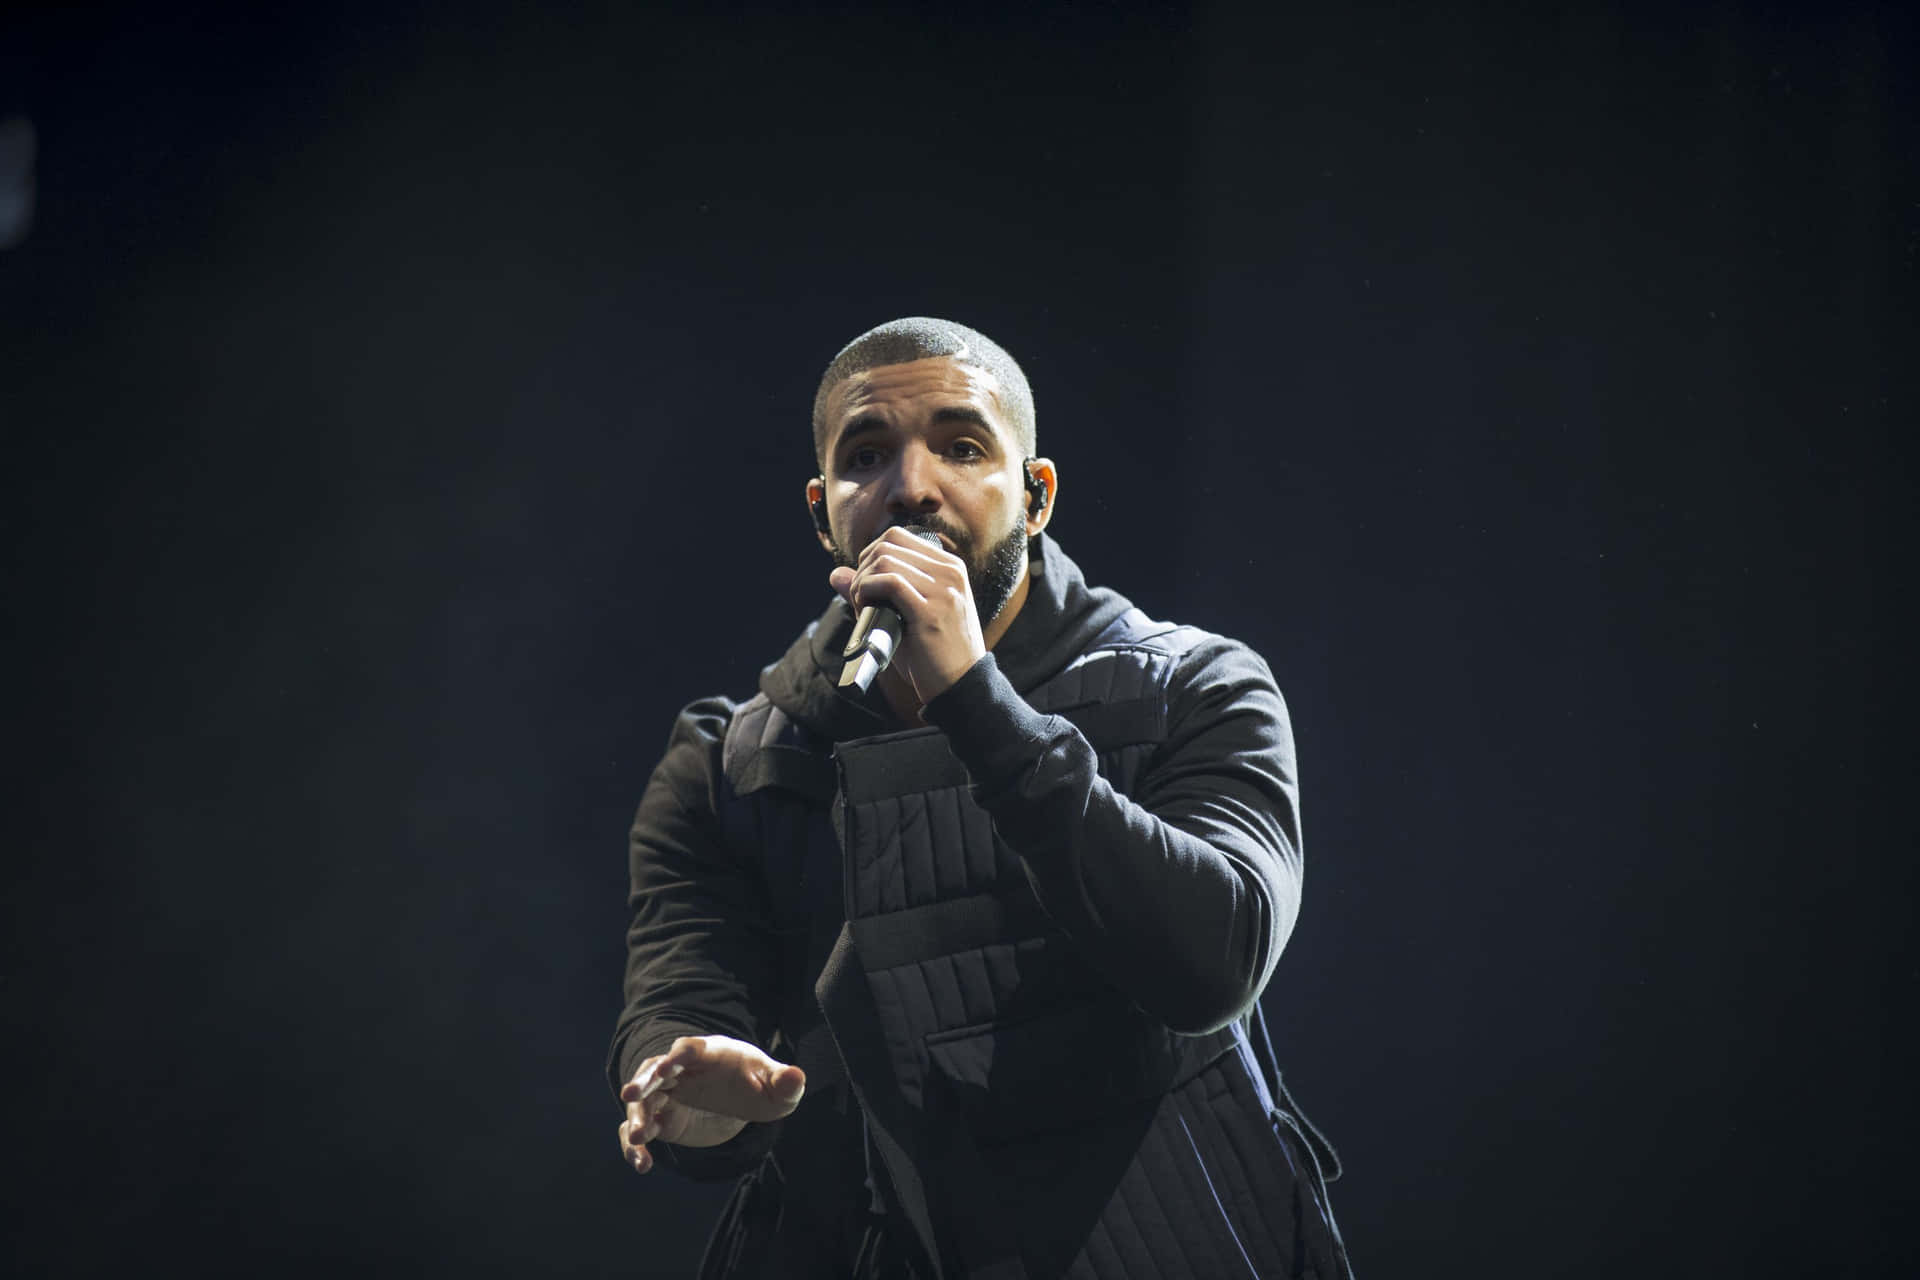 Rappercanadiense Drake Actuando En El Escenario.